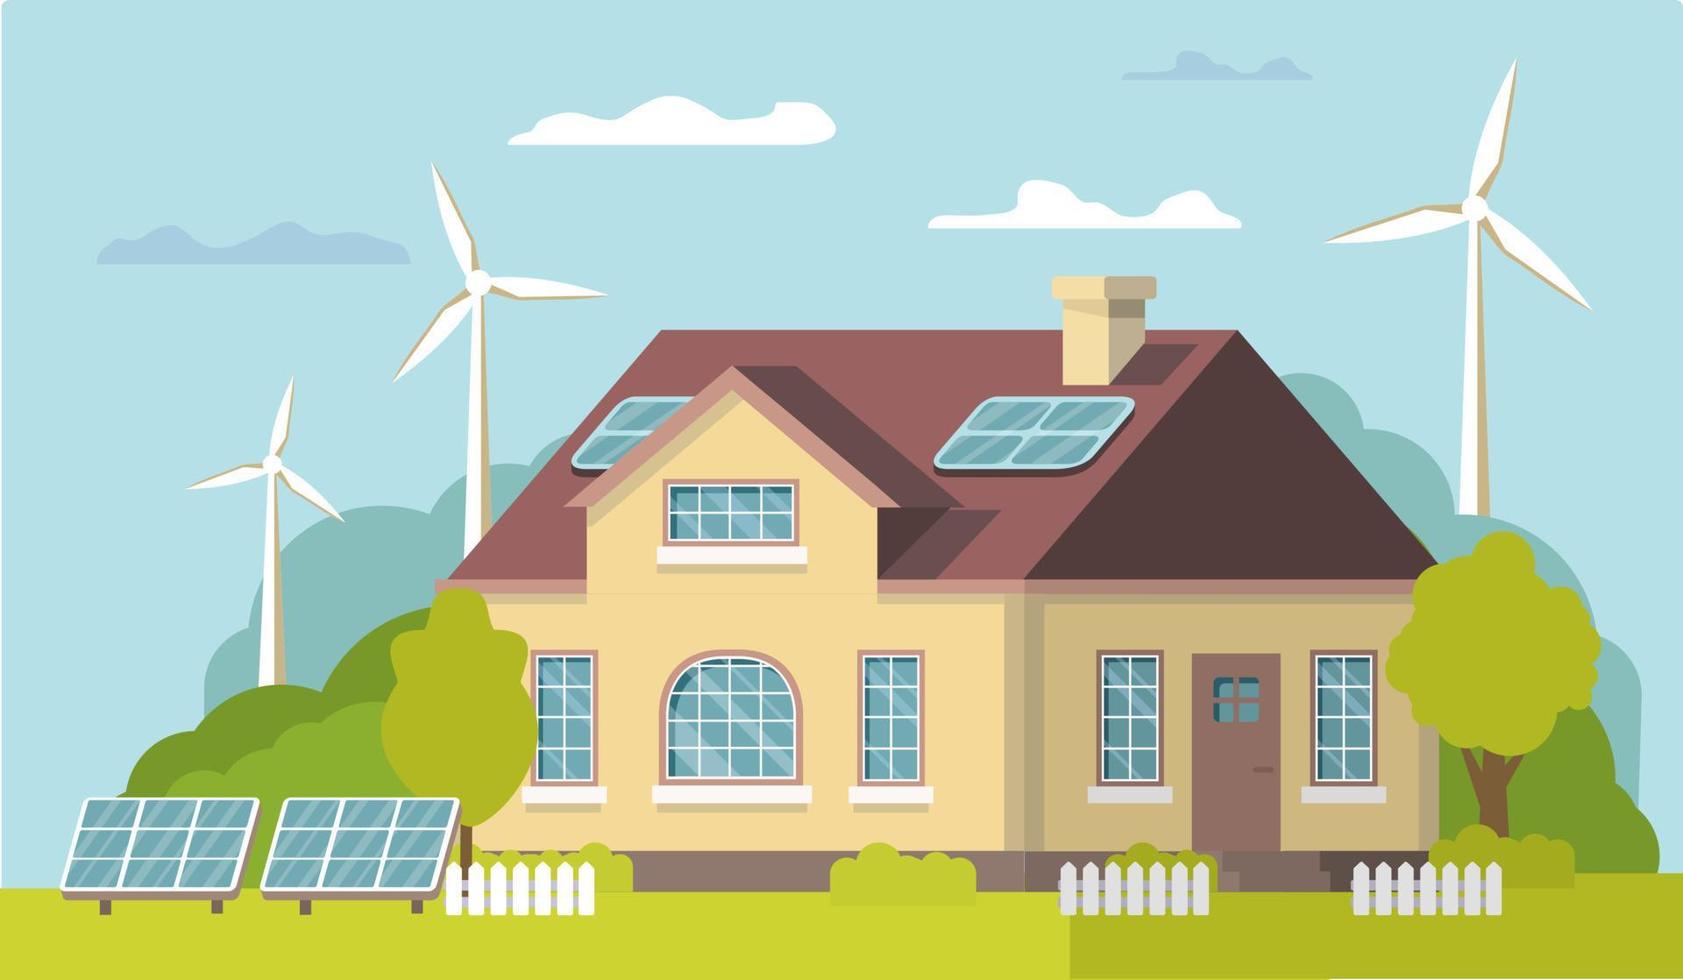 energía verde renovable eco house.solar, energía eólica. energía alternativa eco friendly.vector concepto ilustración. Aislado en un fondo blanco. vector